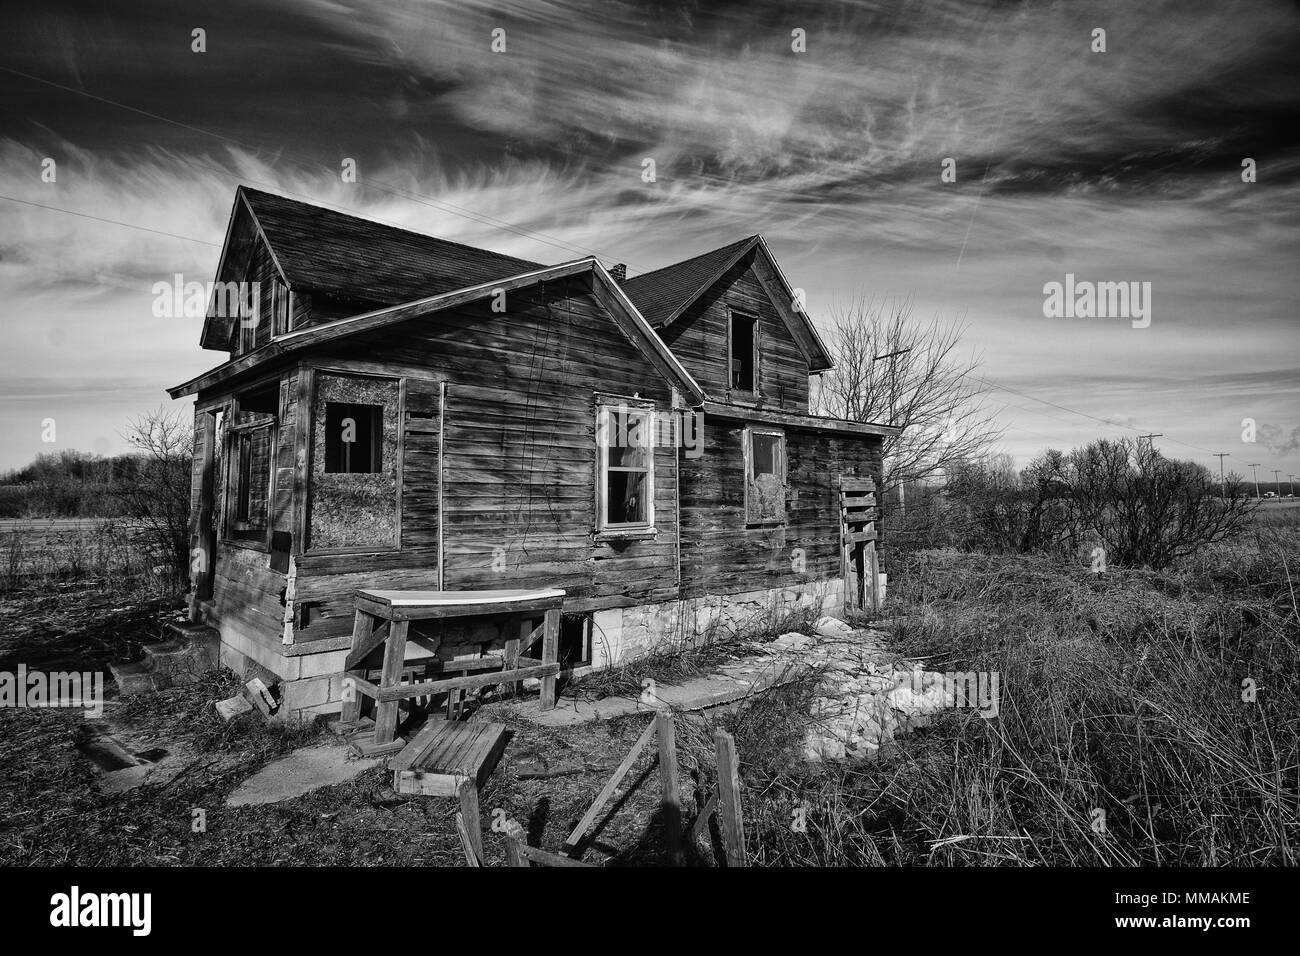 Fotografía en blanco y negro de una antigua casa de granja abandonada de miedo que se está deteriorando con el tiempo y el abandono. Foto de stock